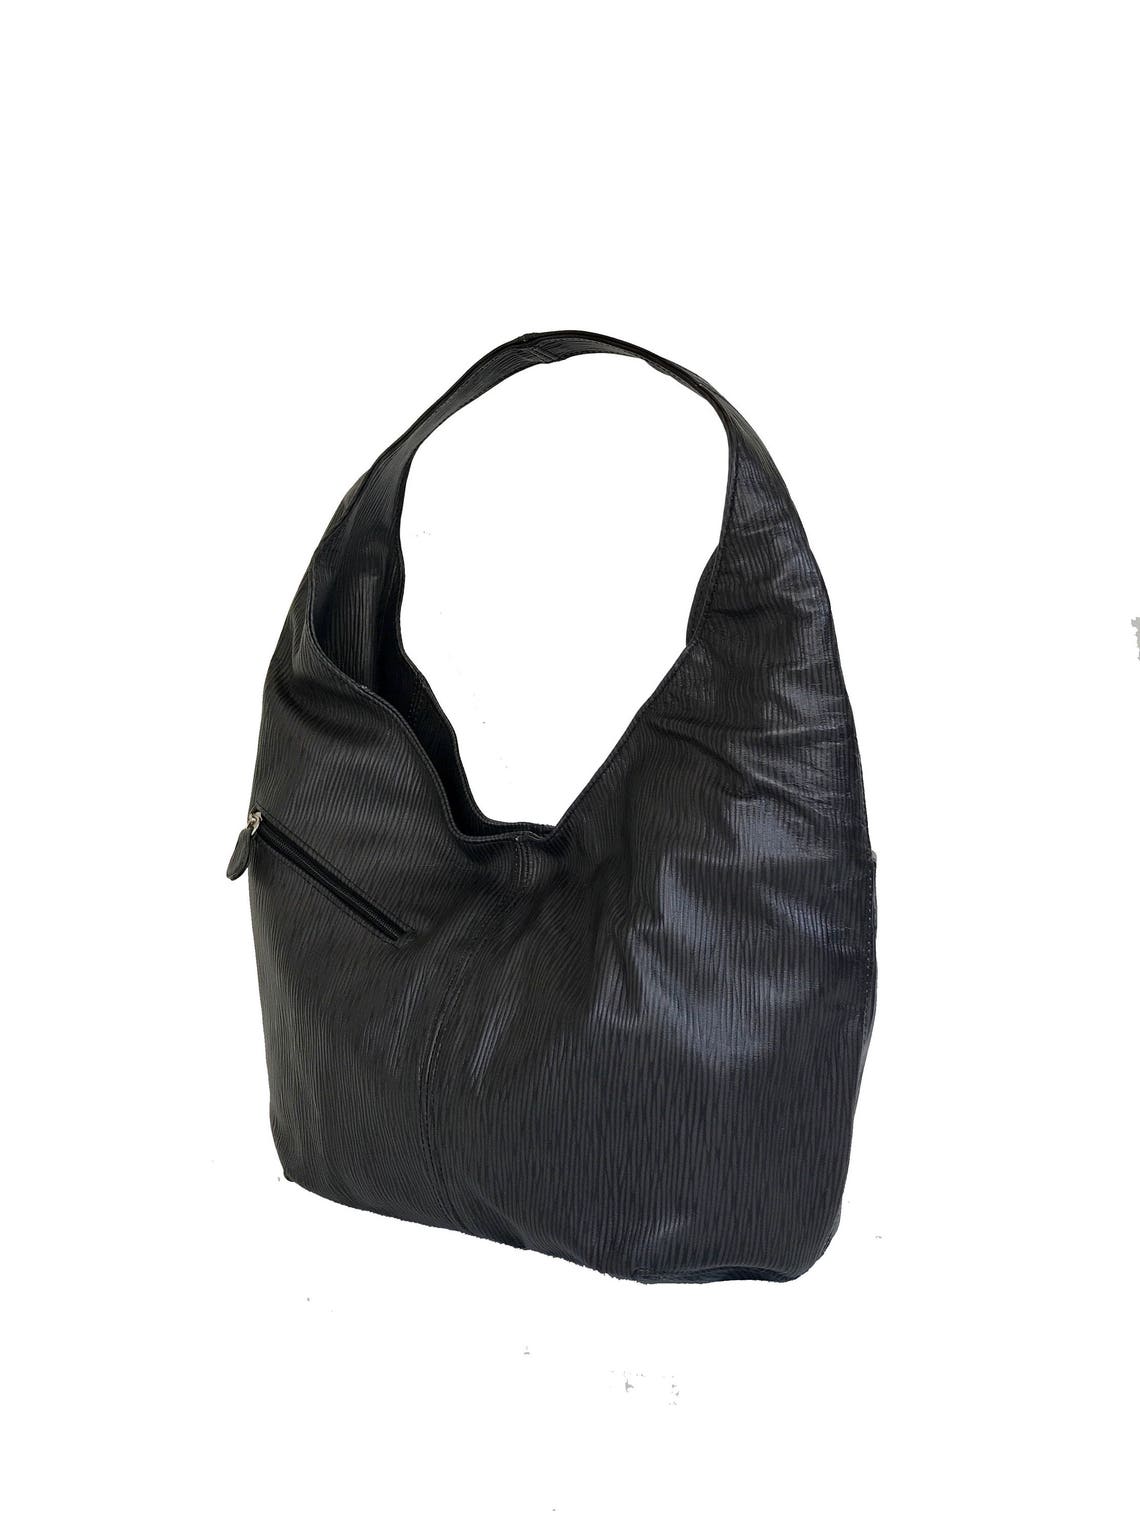 Black Leather Hobo Bag Hobo Purse Original Print Shoulder | Etsy